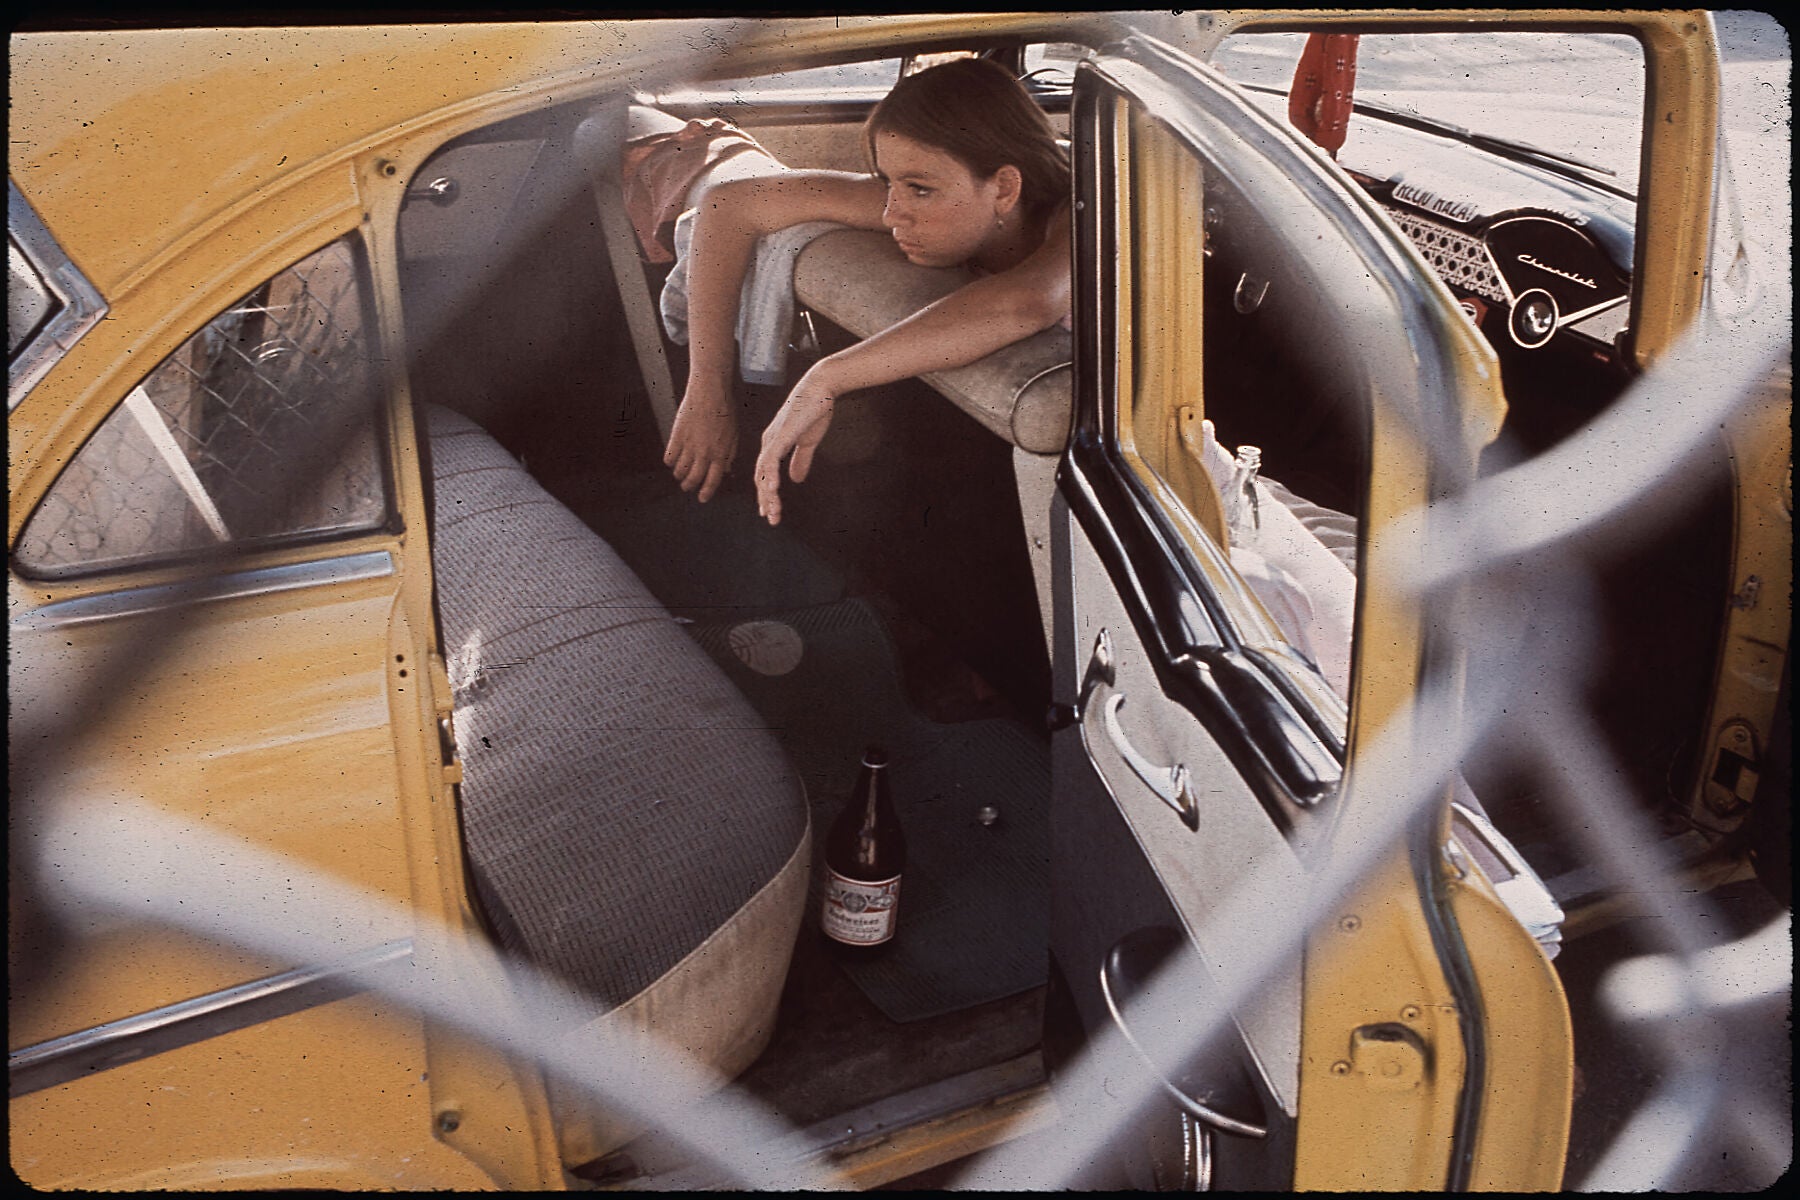 Teenager in Second Ward, Chicano Neighborhood, El Paso, Texas by Danny Lyon - 1972